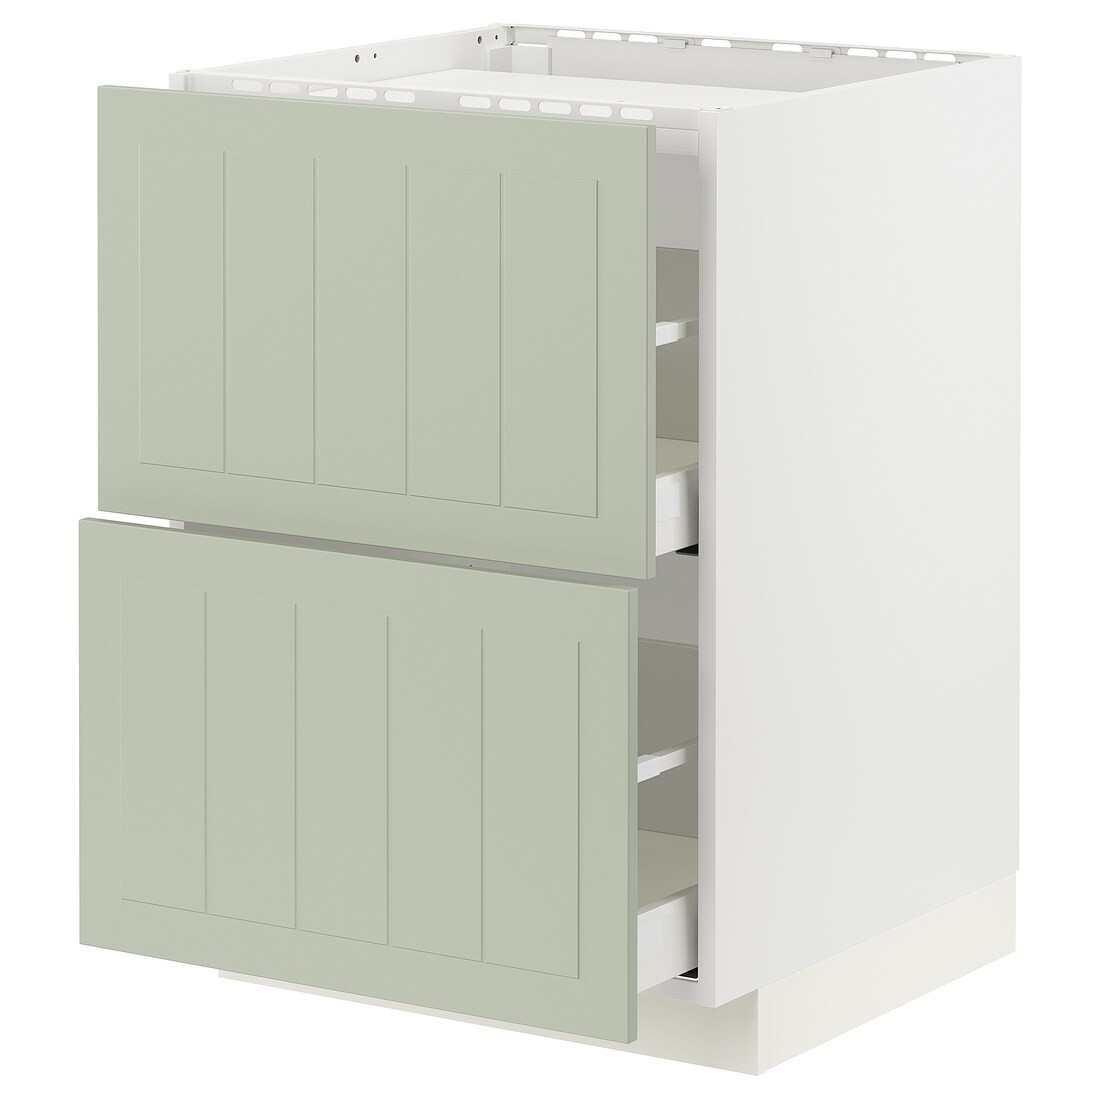 IKEA METOD МЕТОД / MAXIMERA МАКСИМЕРА Шкаф для варочной панели / 2 ящика, белый / Stensund светло-зеленый, 60x60 см 59487339 | 594.873.39